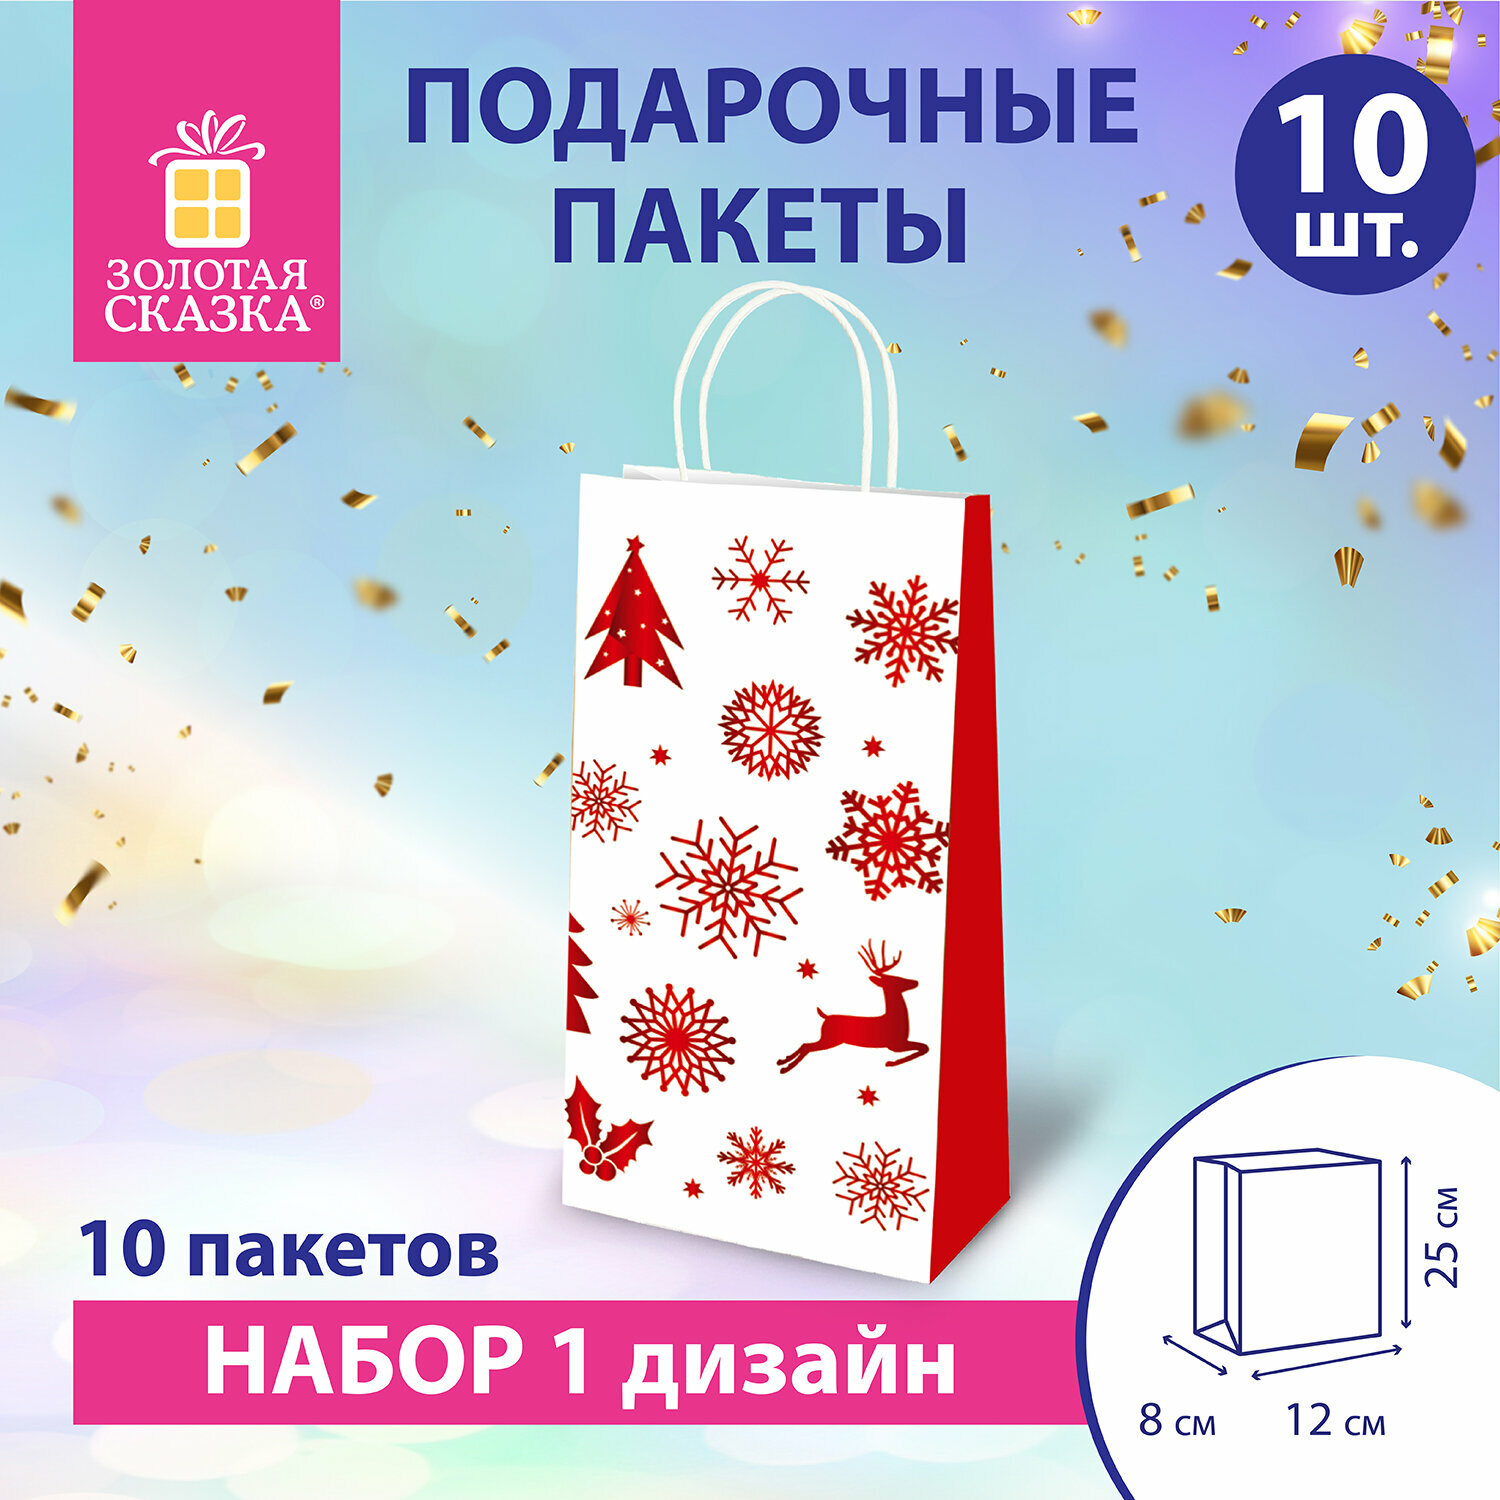 Пакет подарочный новогодний набор 10 штук 12x8x25 см, Winter Kraft, Золотая Сказка, 591964